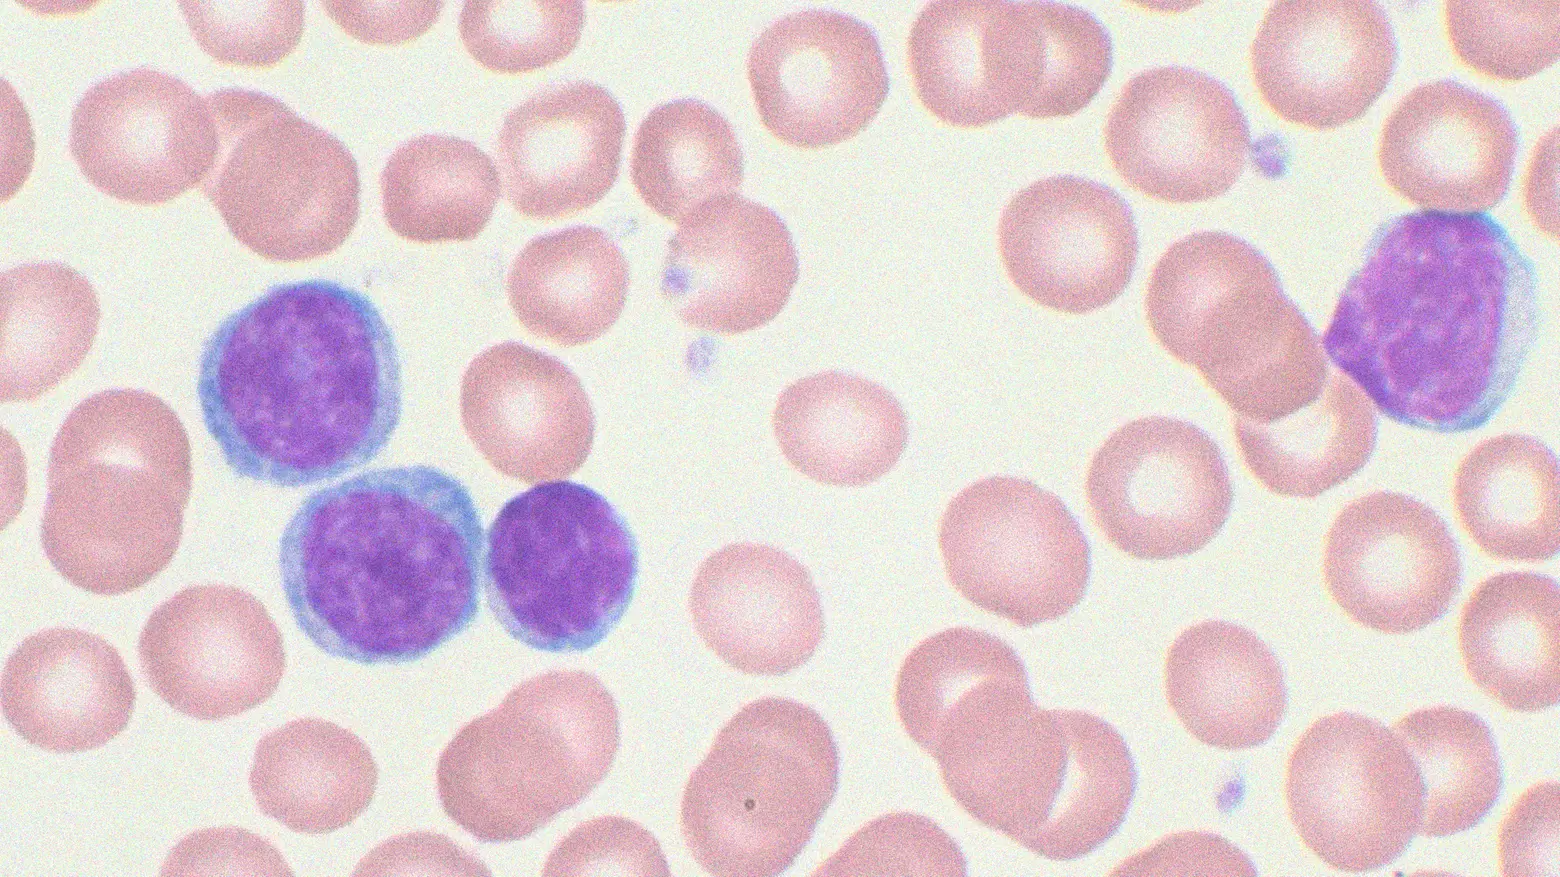 Cellule colpite da leucemia mieloide acuta al microscopio